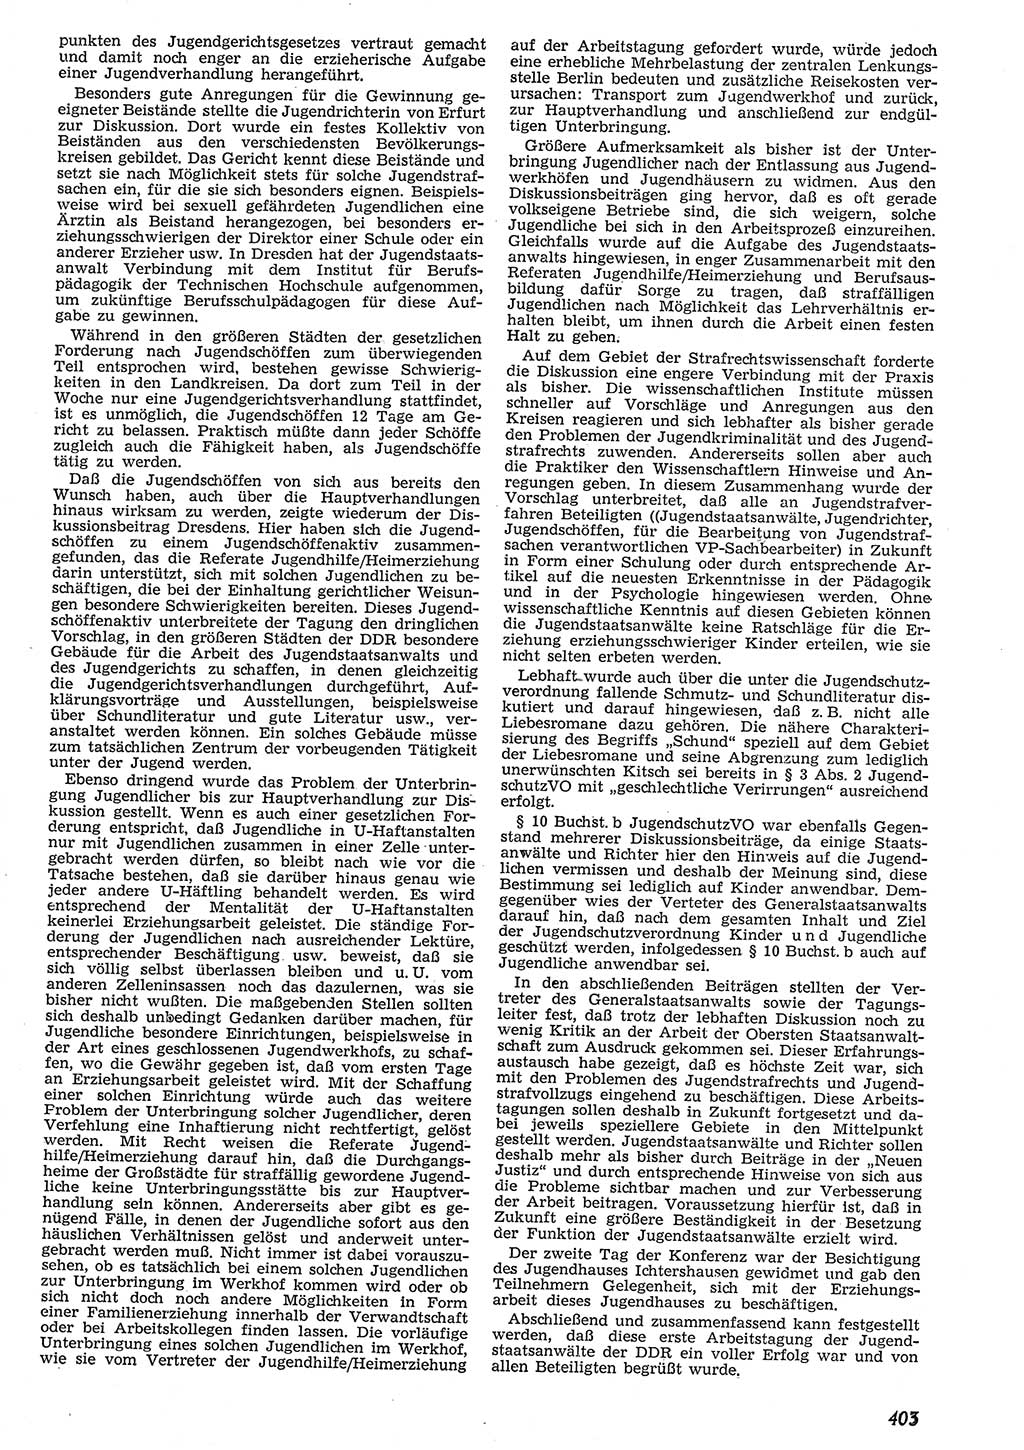 Neue Justiz (NJ), Zeitschrift für Recht und Rechtswissenschaft [Deutsche Demokratische Republik (DDR)], 10. Jahrgang 1956, Seite 403 (NJ DDR 1956, S. 403)